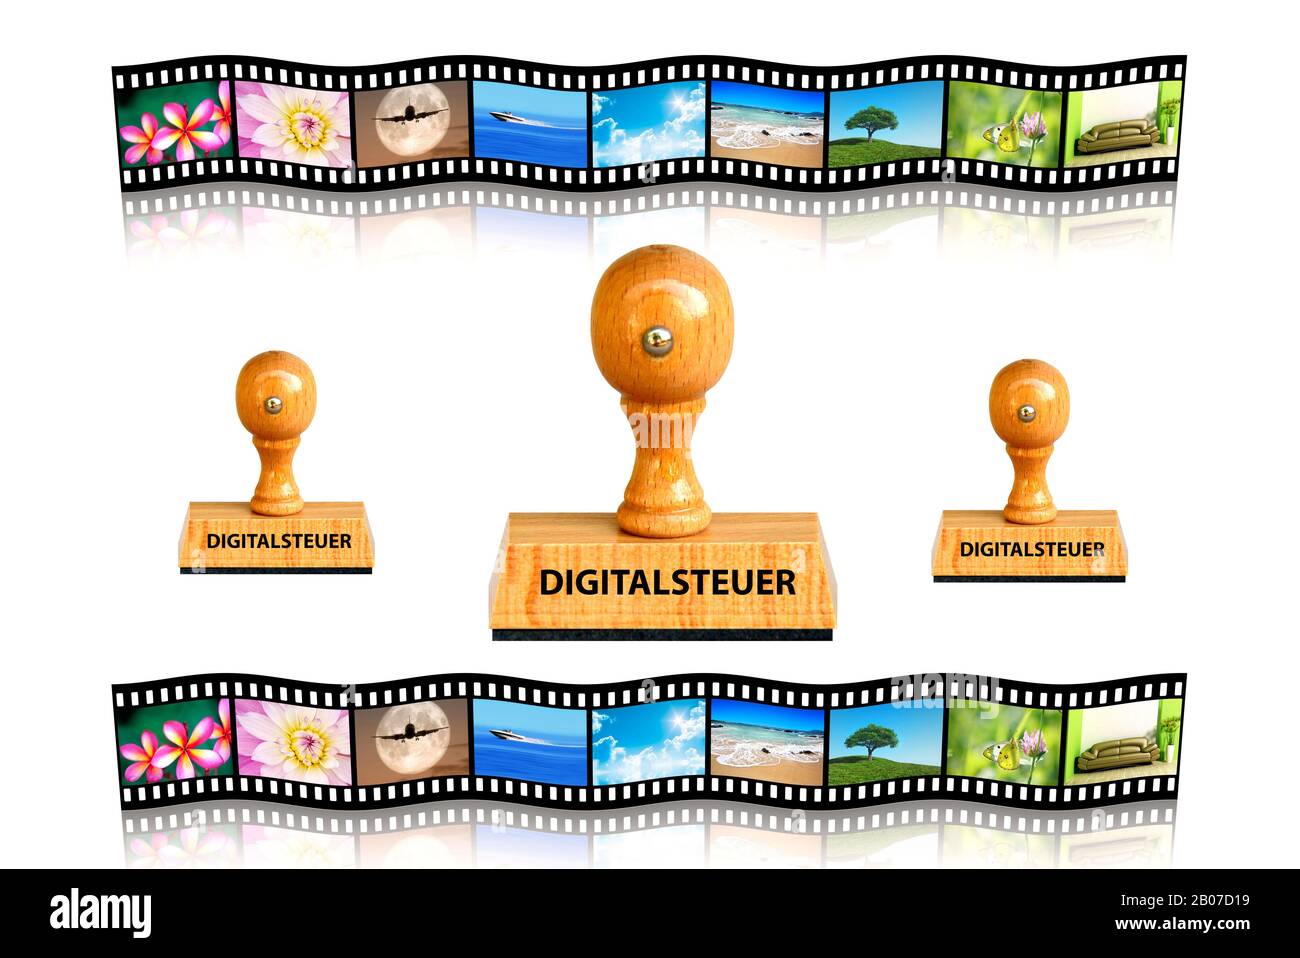 Stempelschrift Digitalsteuer, Digital Tax, Folienfilm im Hintergrund, Deutschland Stockfoto